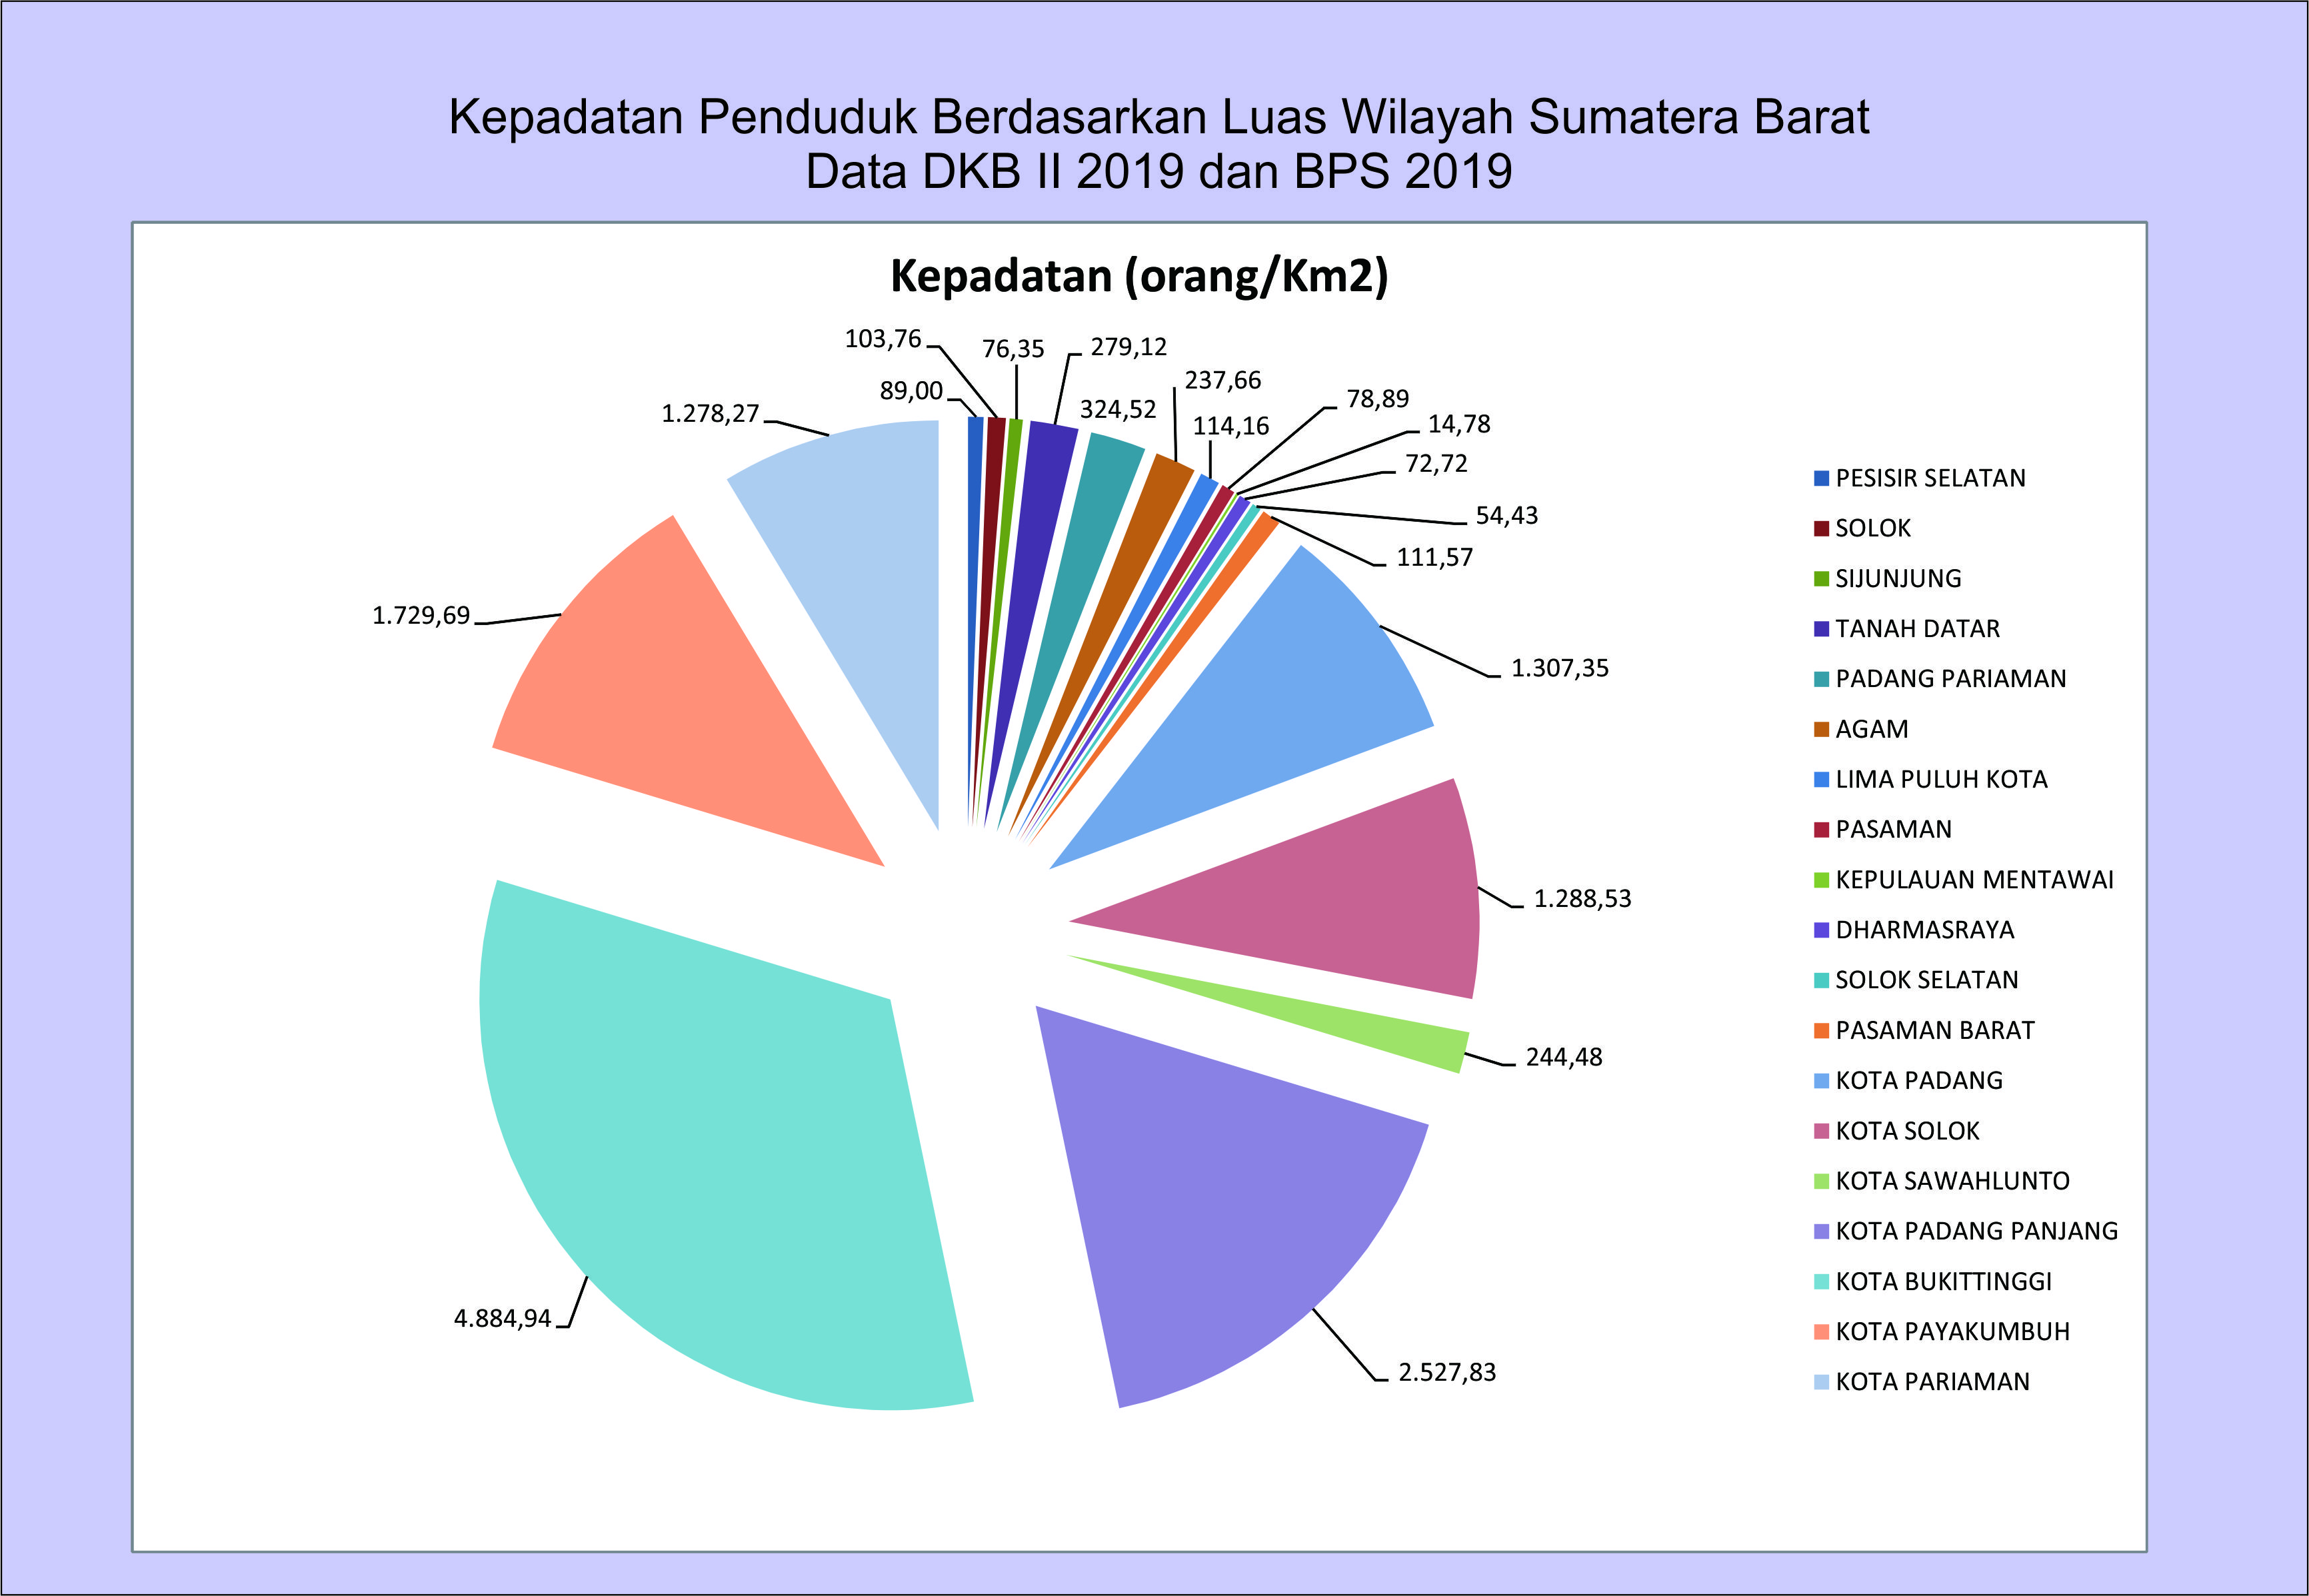 Kepadatan Penduduk Berdasarkan Luas Wilayah Sumatera Barat Berdasarkan DKB II 2019 dan BPS 2019